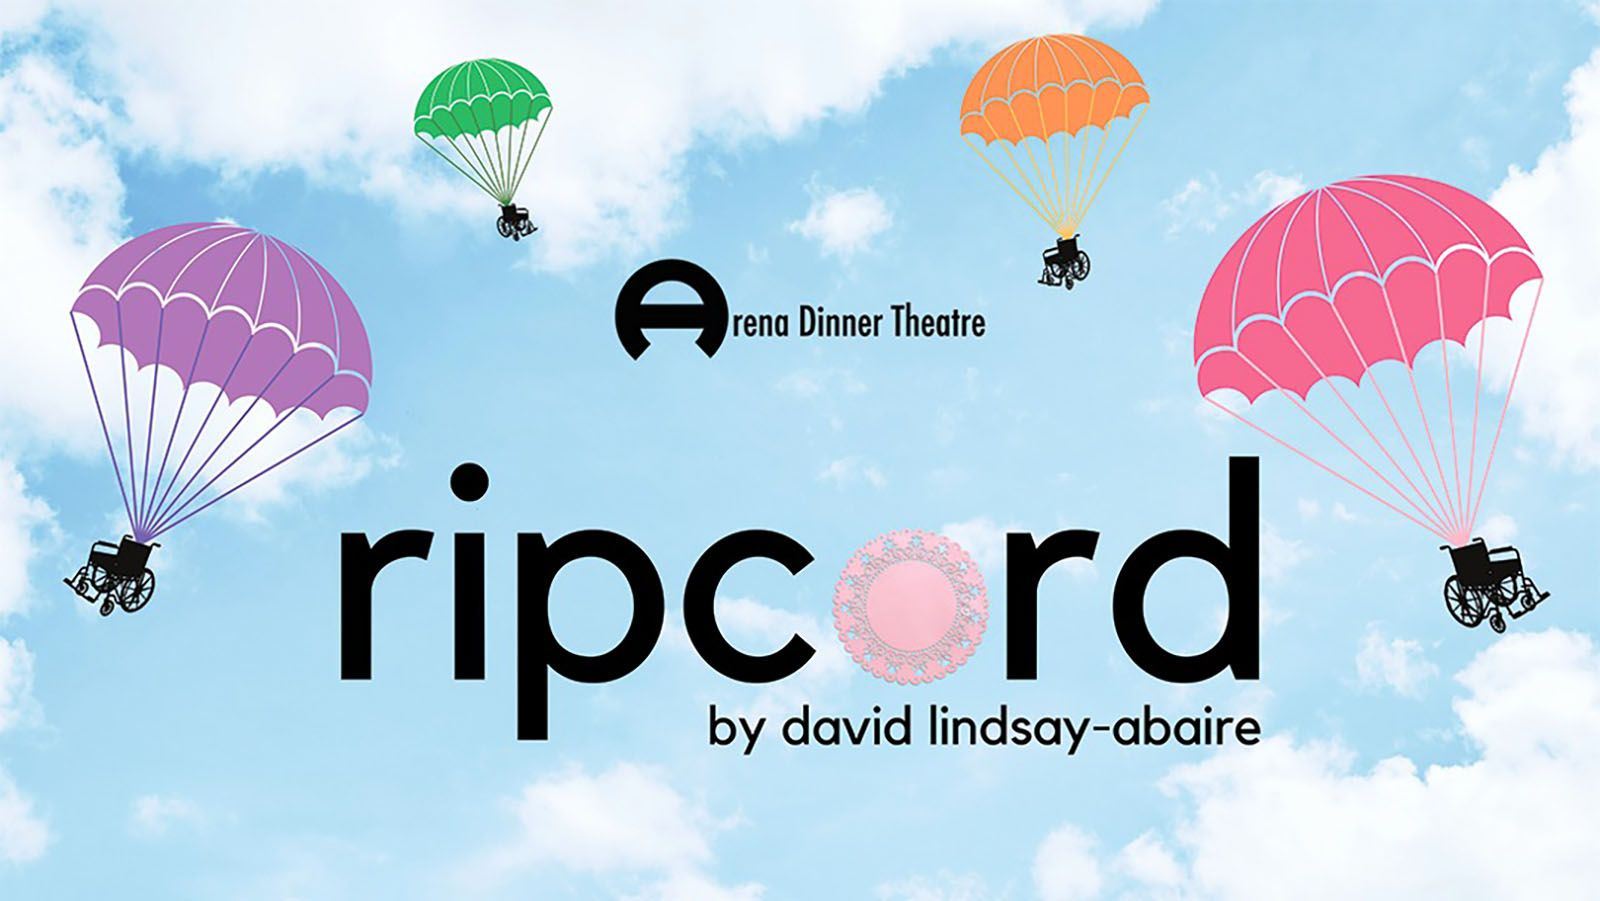 Arena Dinner Theatre will present Ripcord.